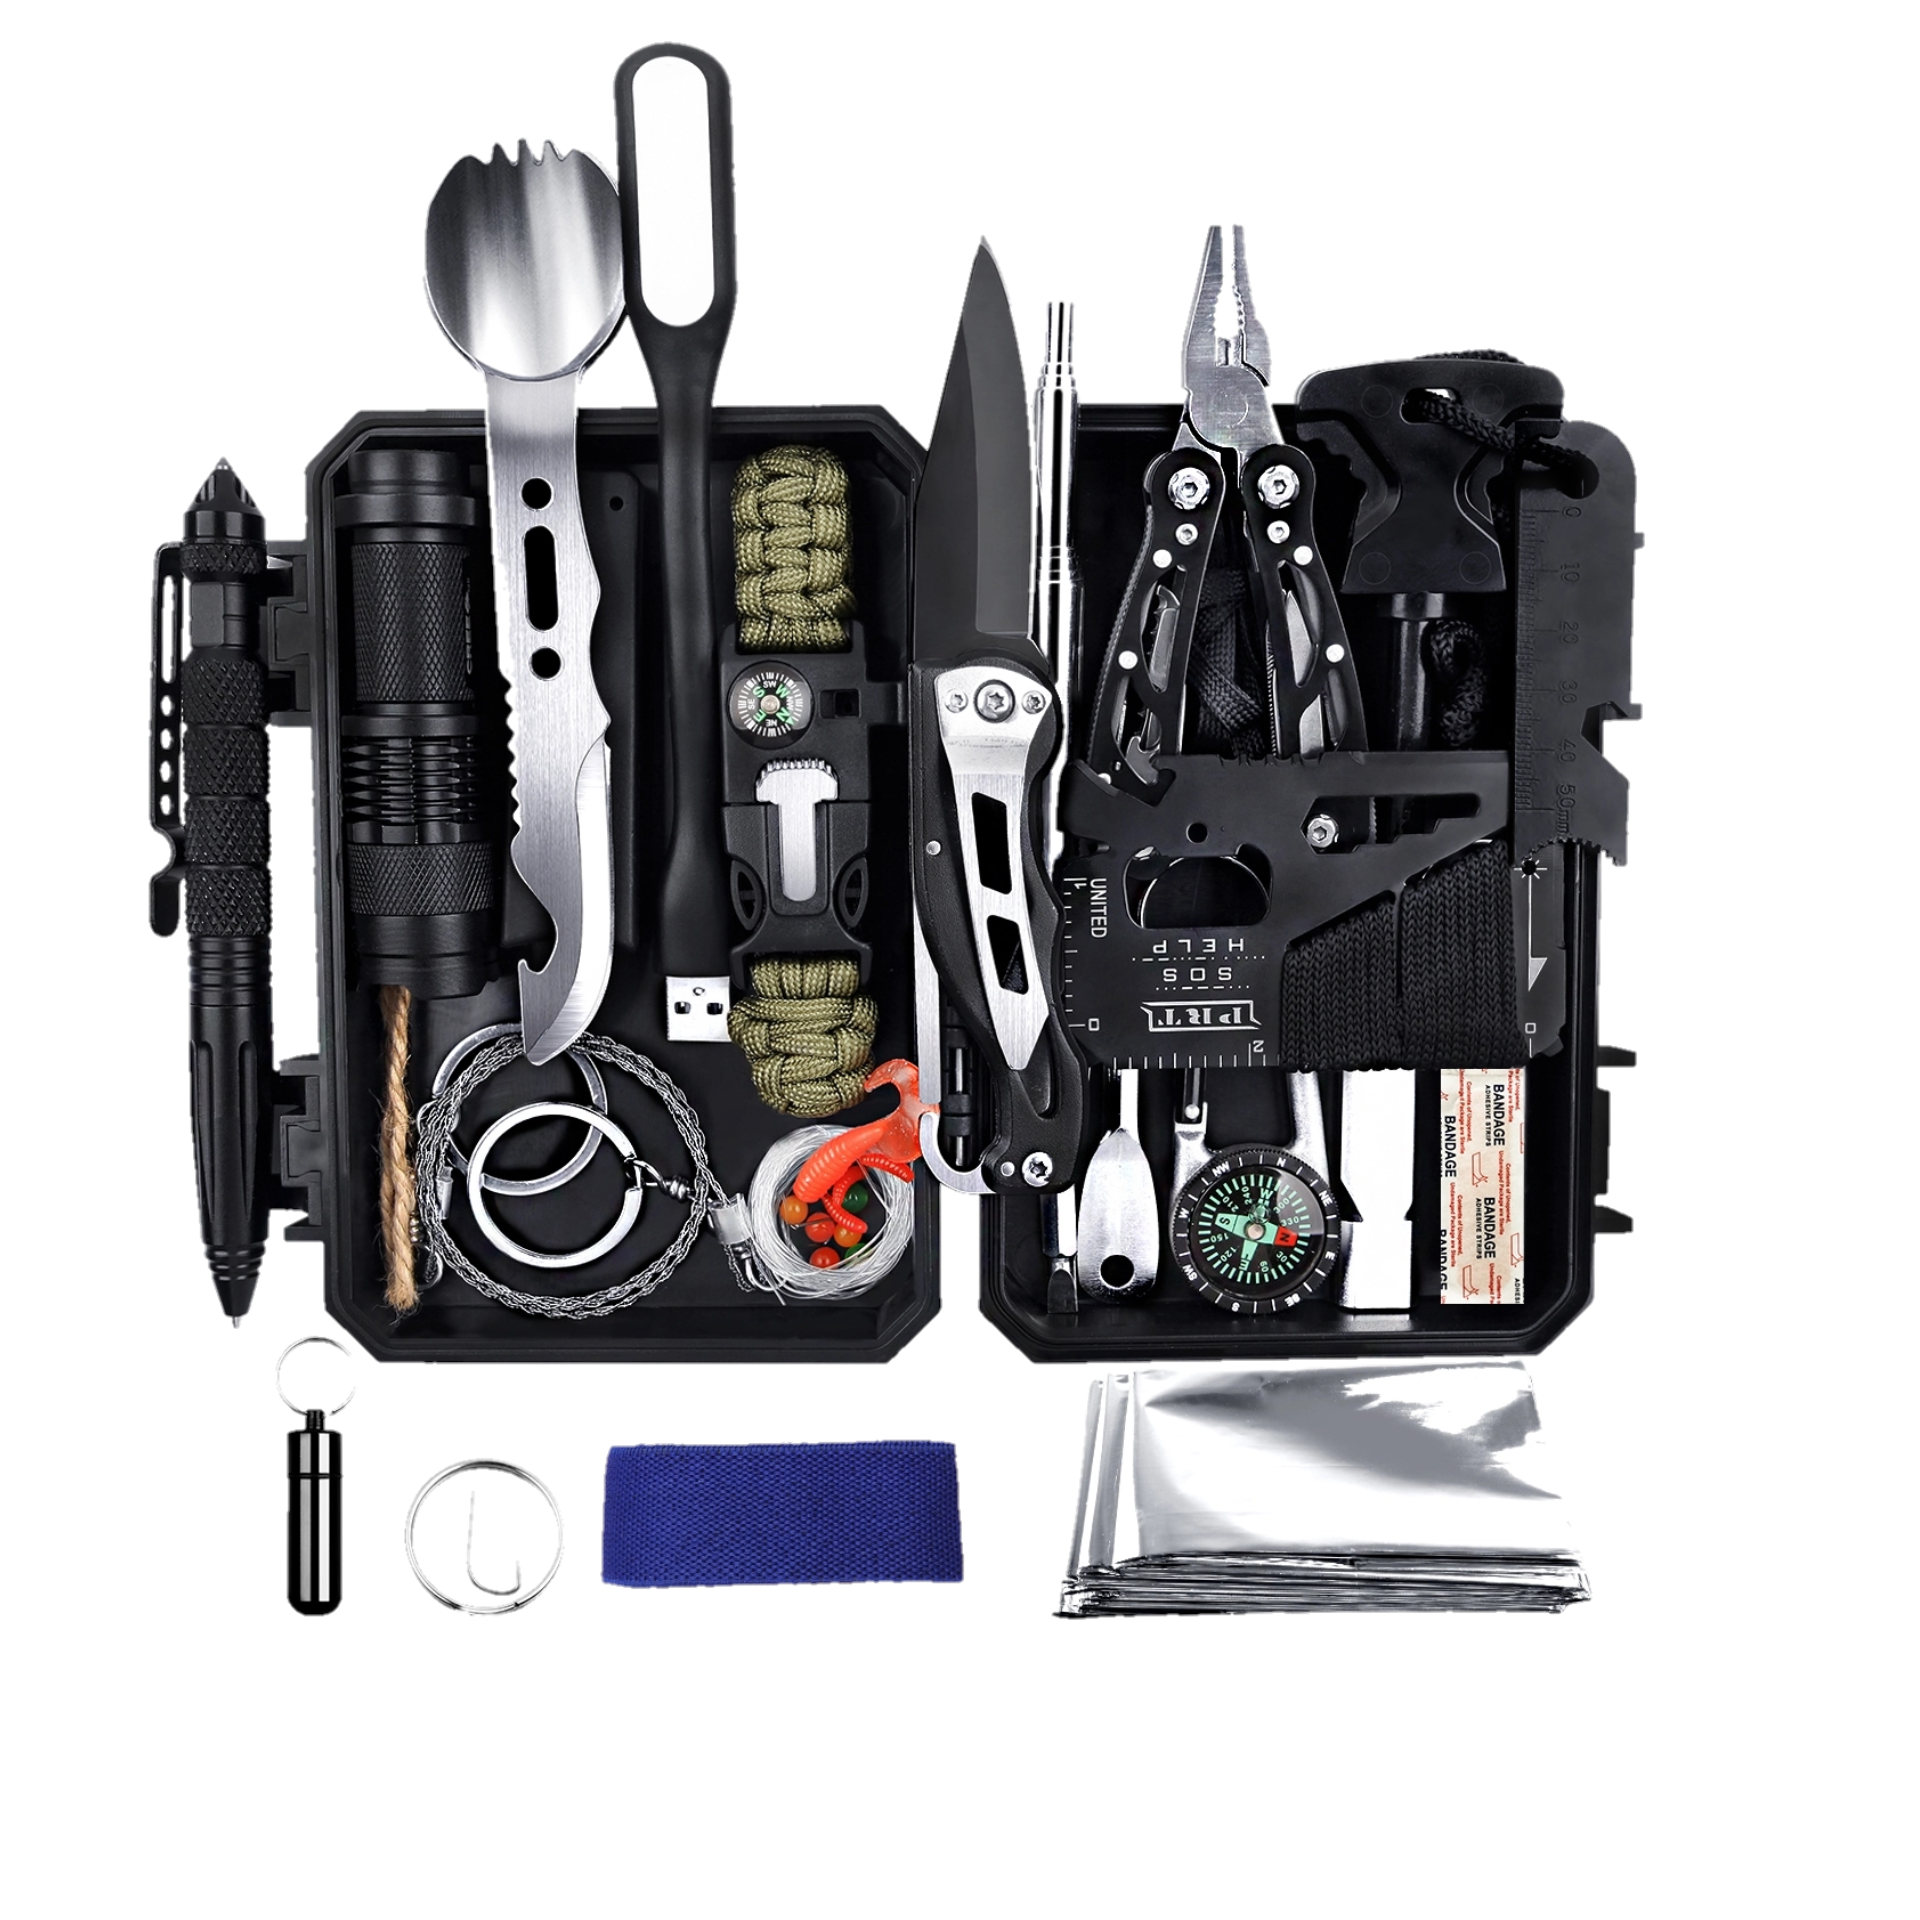 ANTARCTICA Emergency Survival Gear Kits 60 in 1, Outdoor Survival